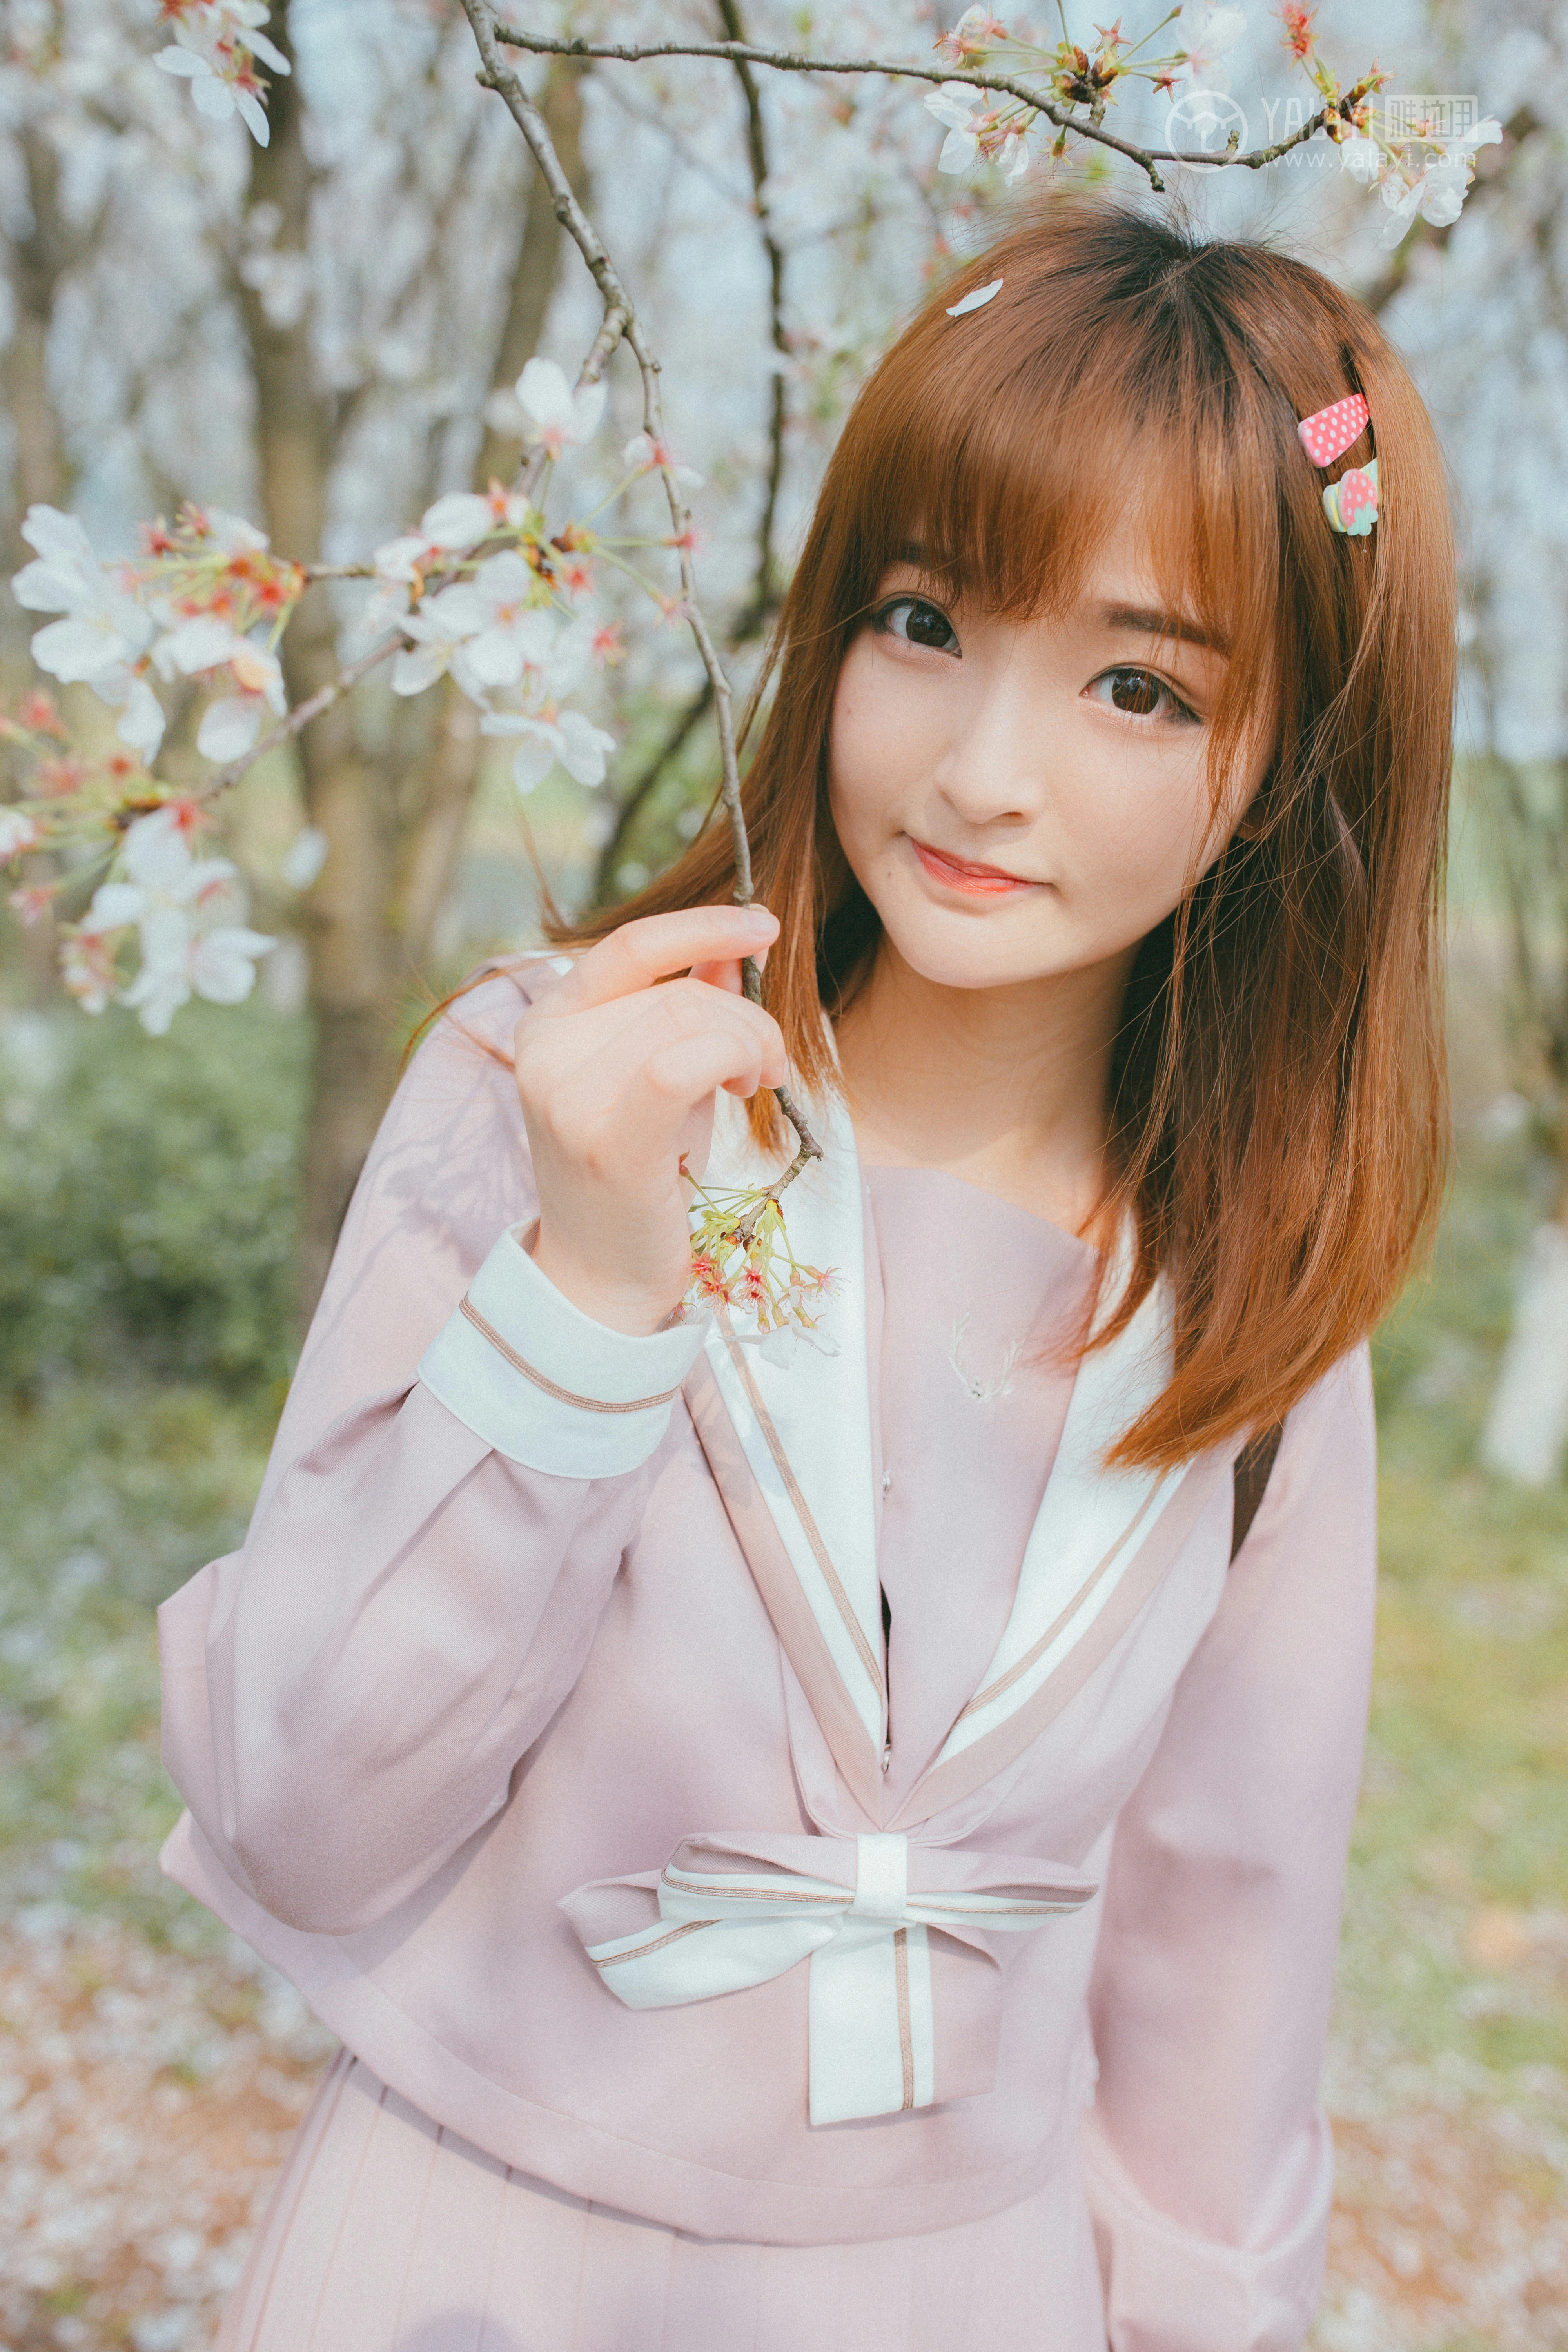 [YALAYI雅拉伊]No.246 樱花樱花想见你 团团 日本高中女生制服加肉色丝袜美腿性感私房写真集,